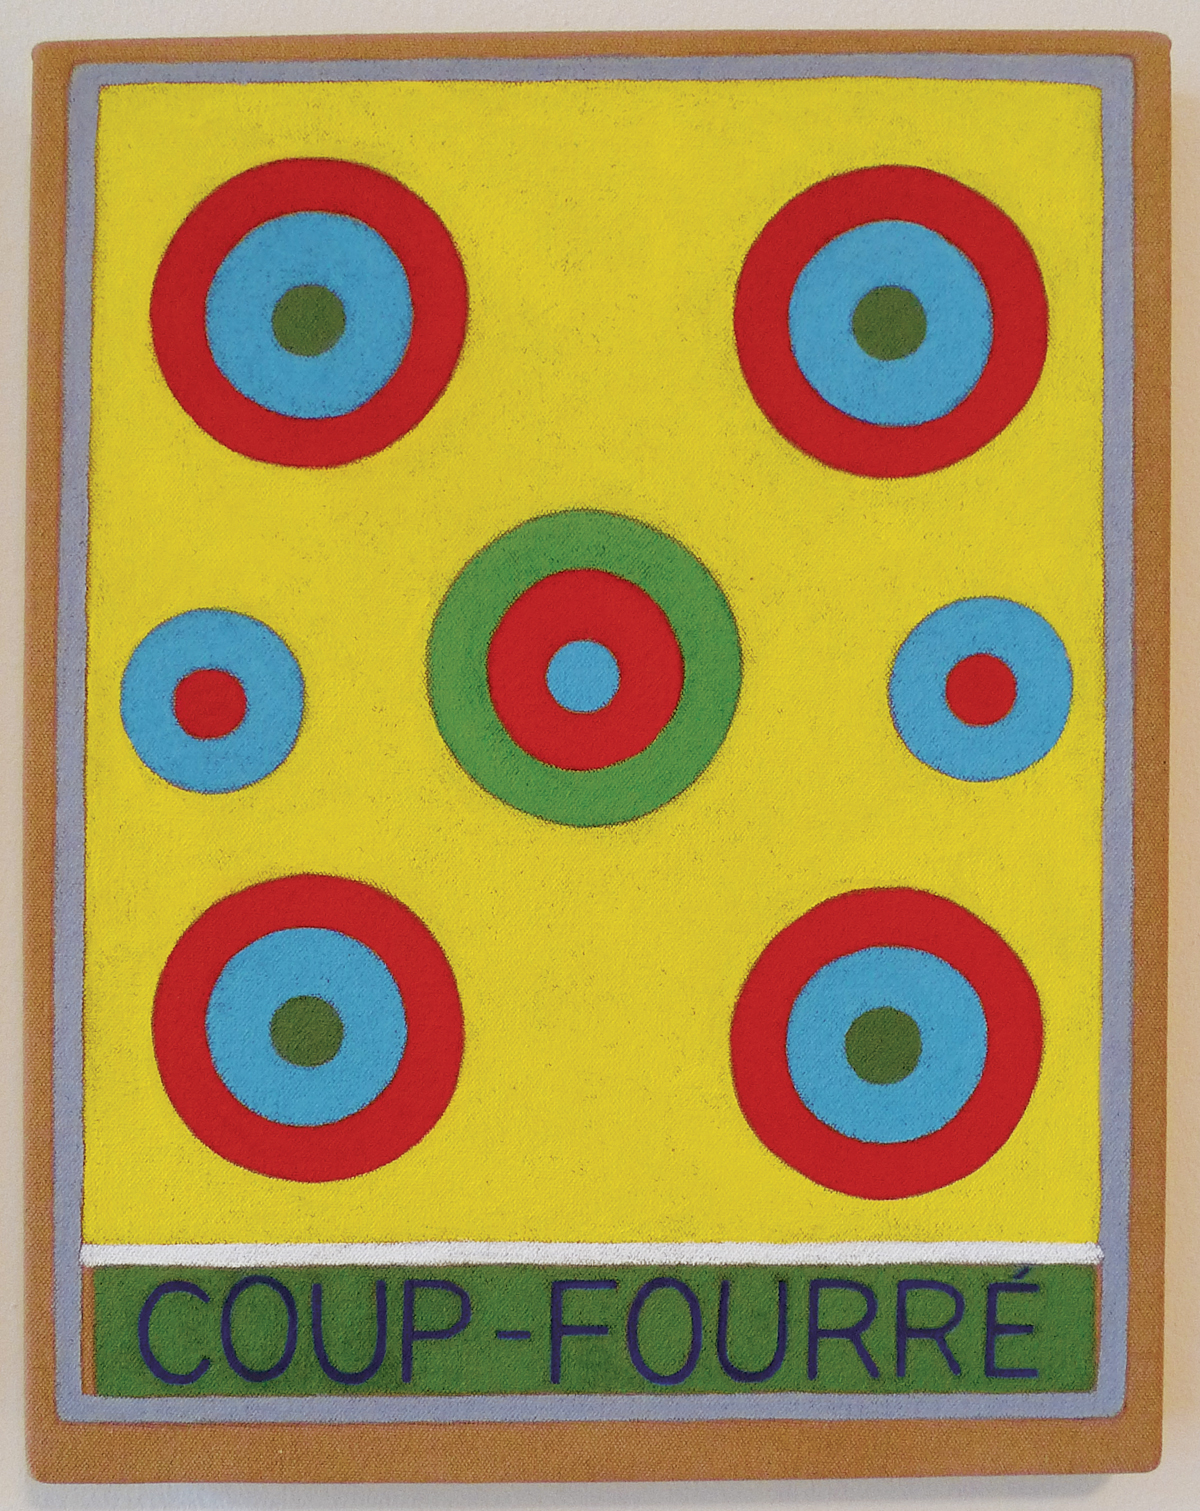 Coup-Fourré